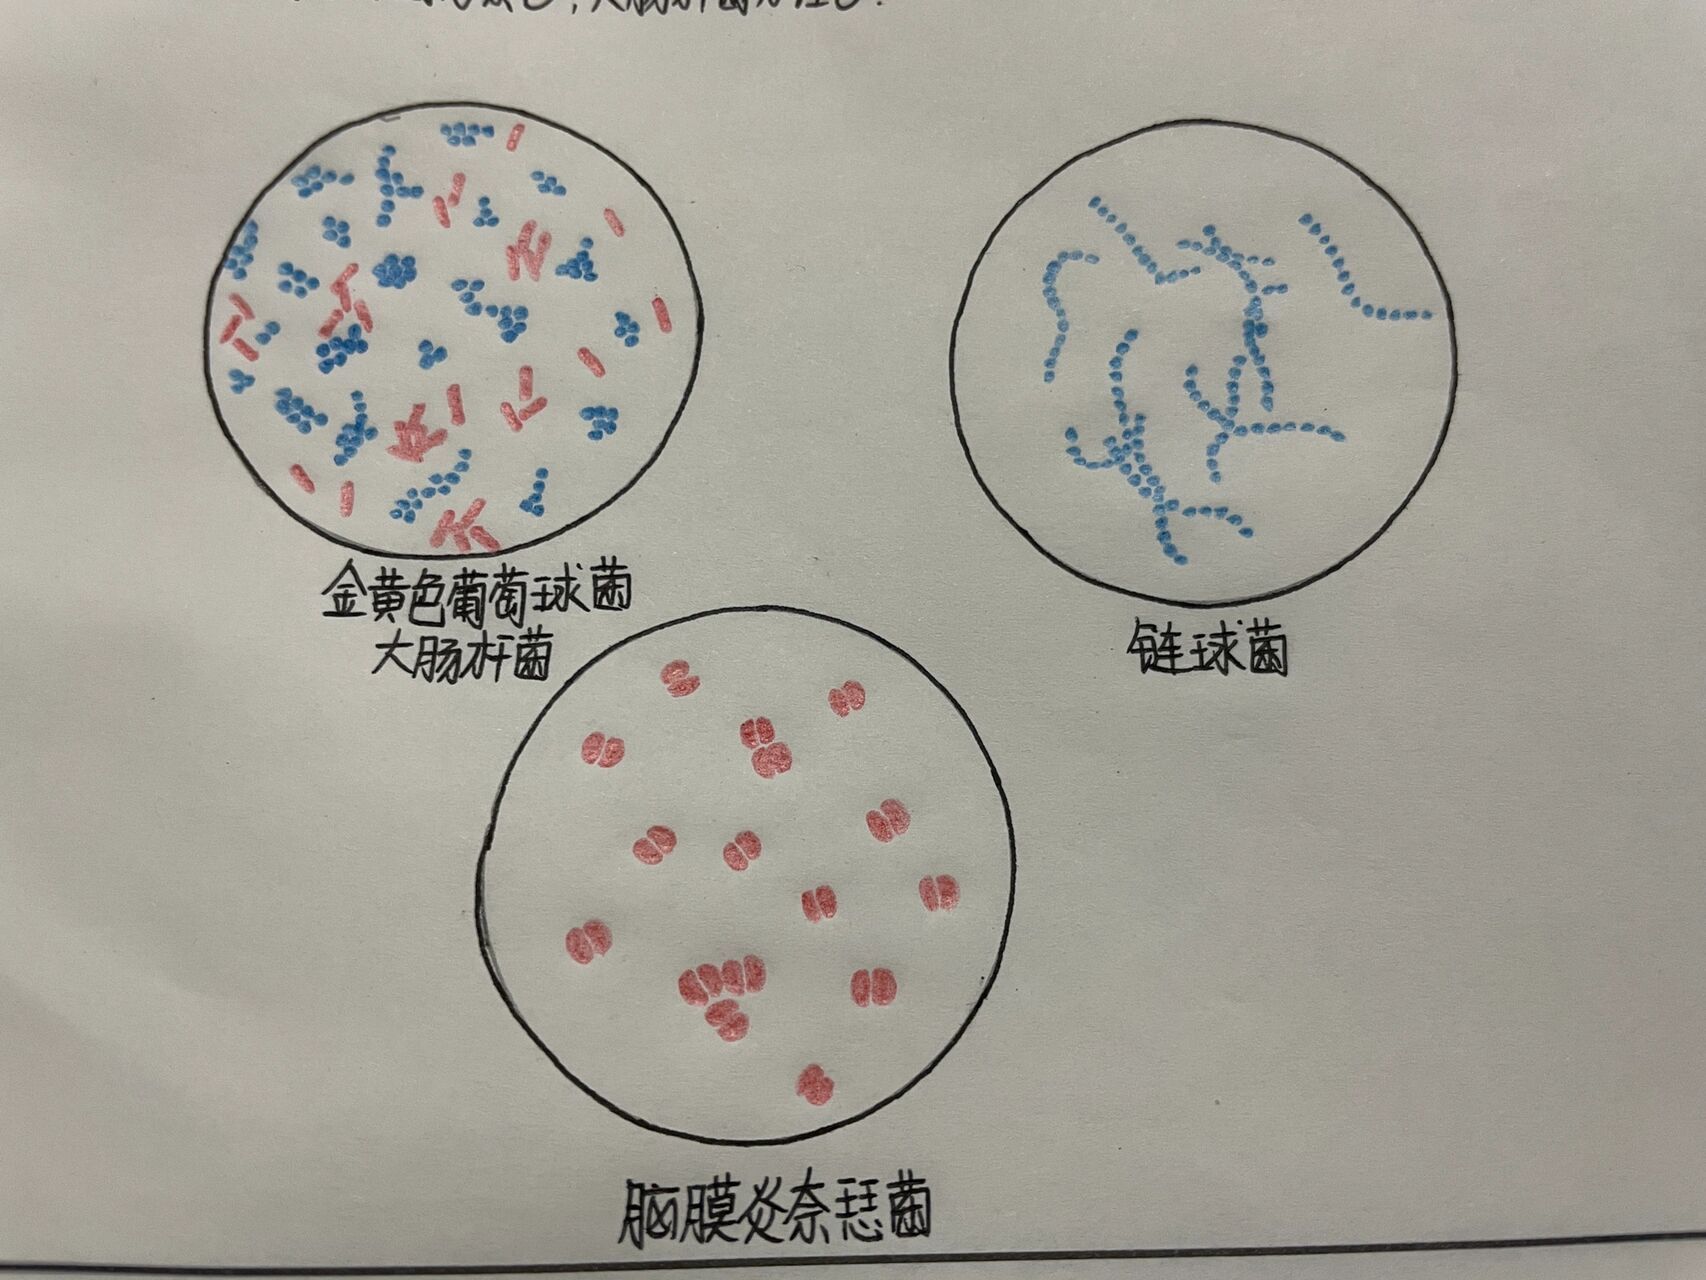 医学微生物红蓝铅笔绘图 脑膜炎奈瑟菌99 金黄色葡萄球菌和大肠杆菌